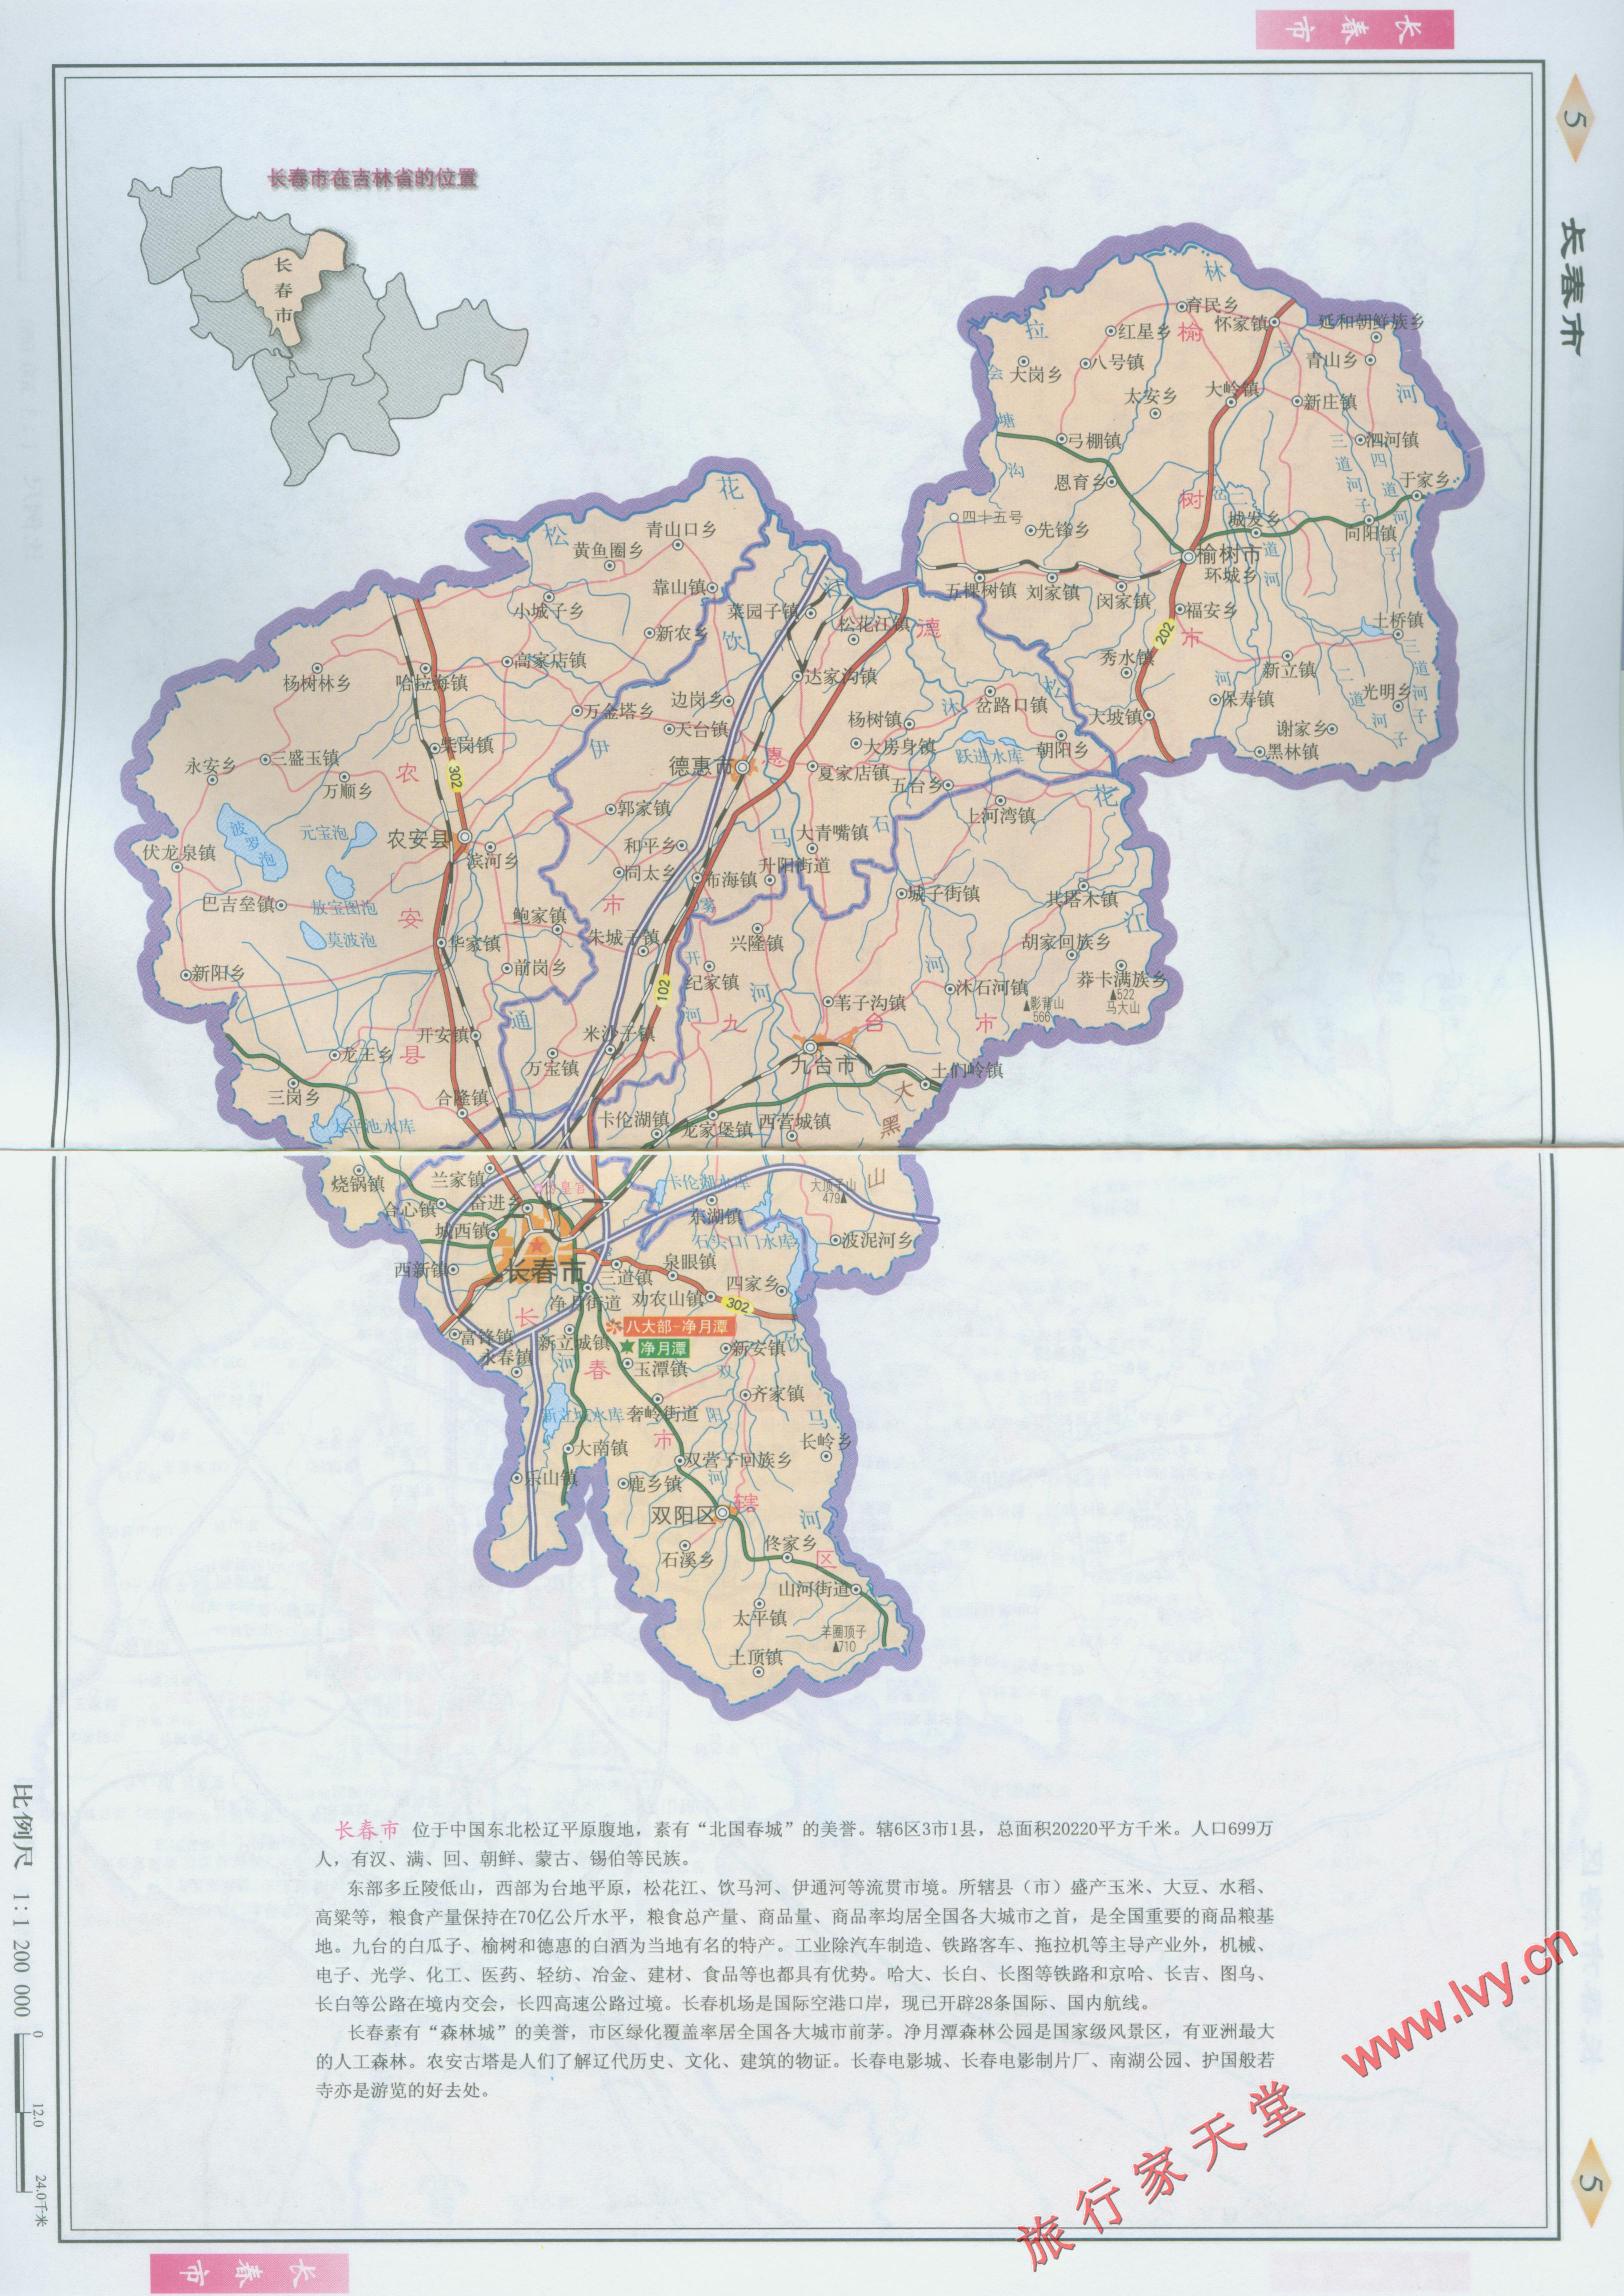 杭州市地图区域划分 杭州地图十大区域划分_杭州市区域划分最新